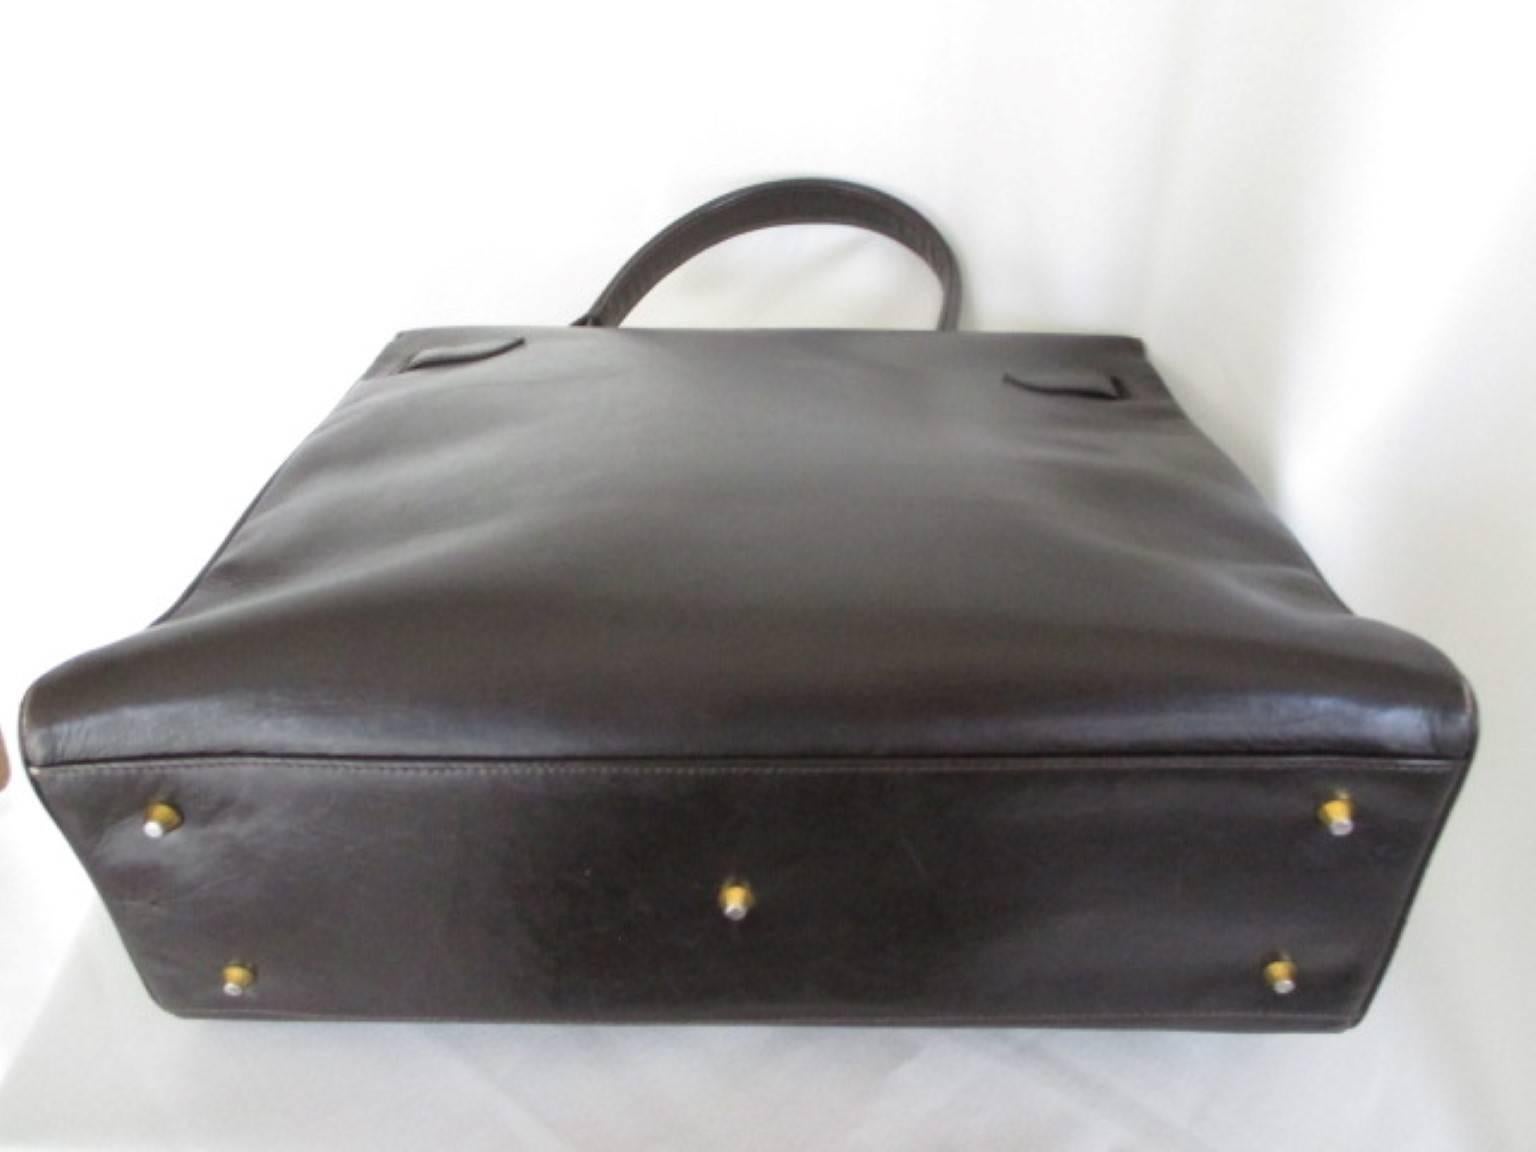 Black brown vintage leather bag with gold hardware